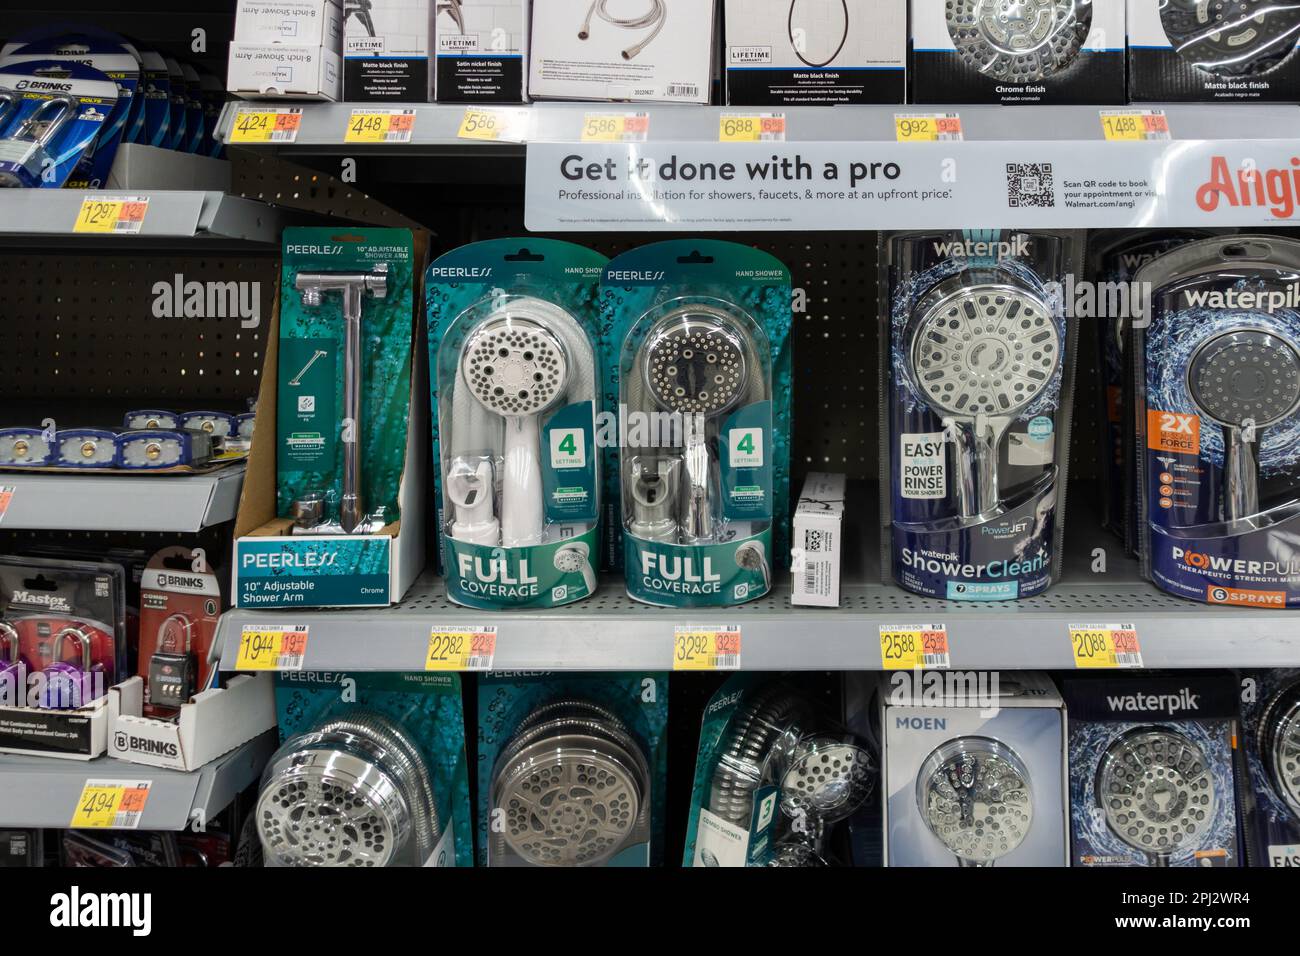 Pacchetti doccia e serrature combinate su scaffali all'interno di un Walmart Supercenter a Wichita, Kansas, USA. Foto Stock